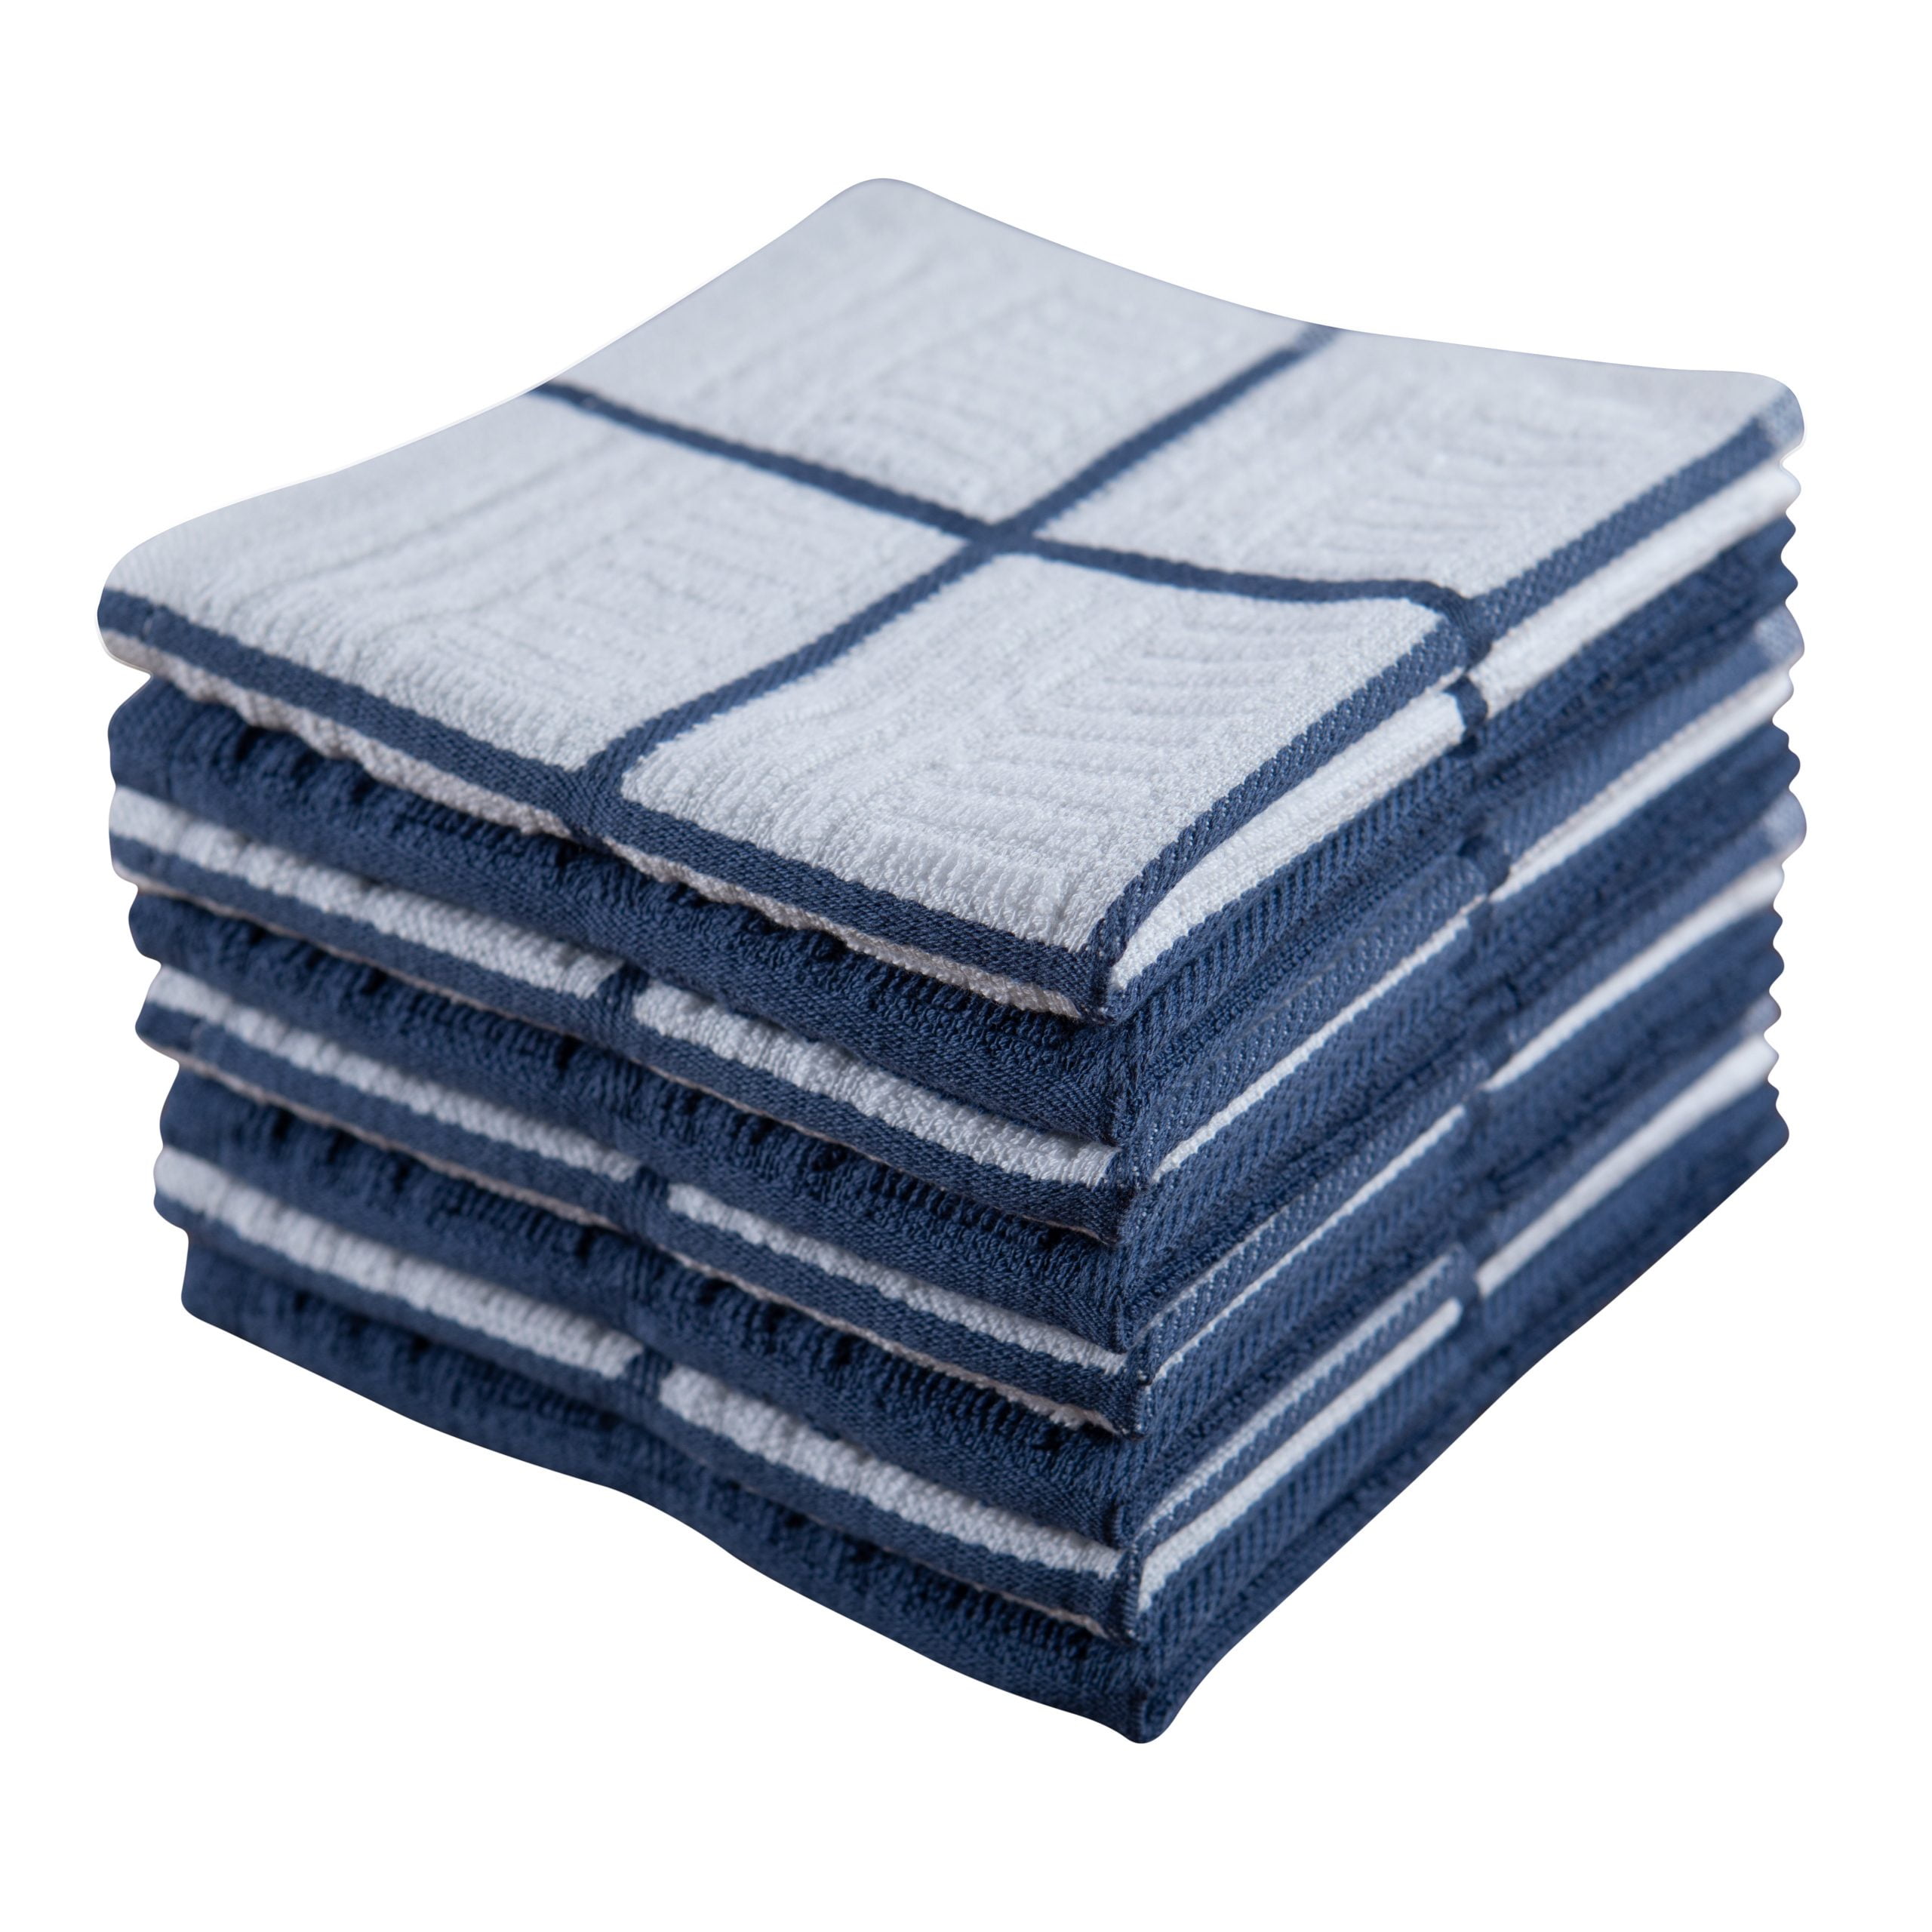 Blue Kitchen Dish Towels